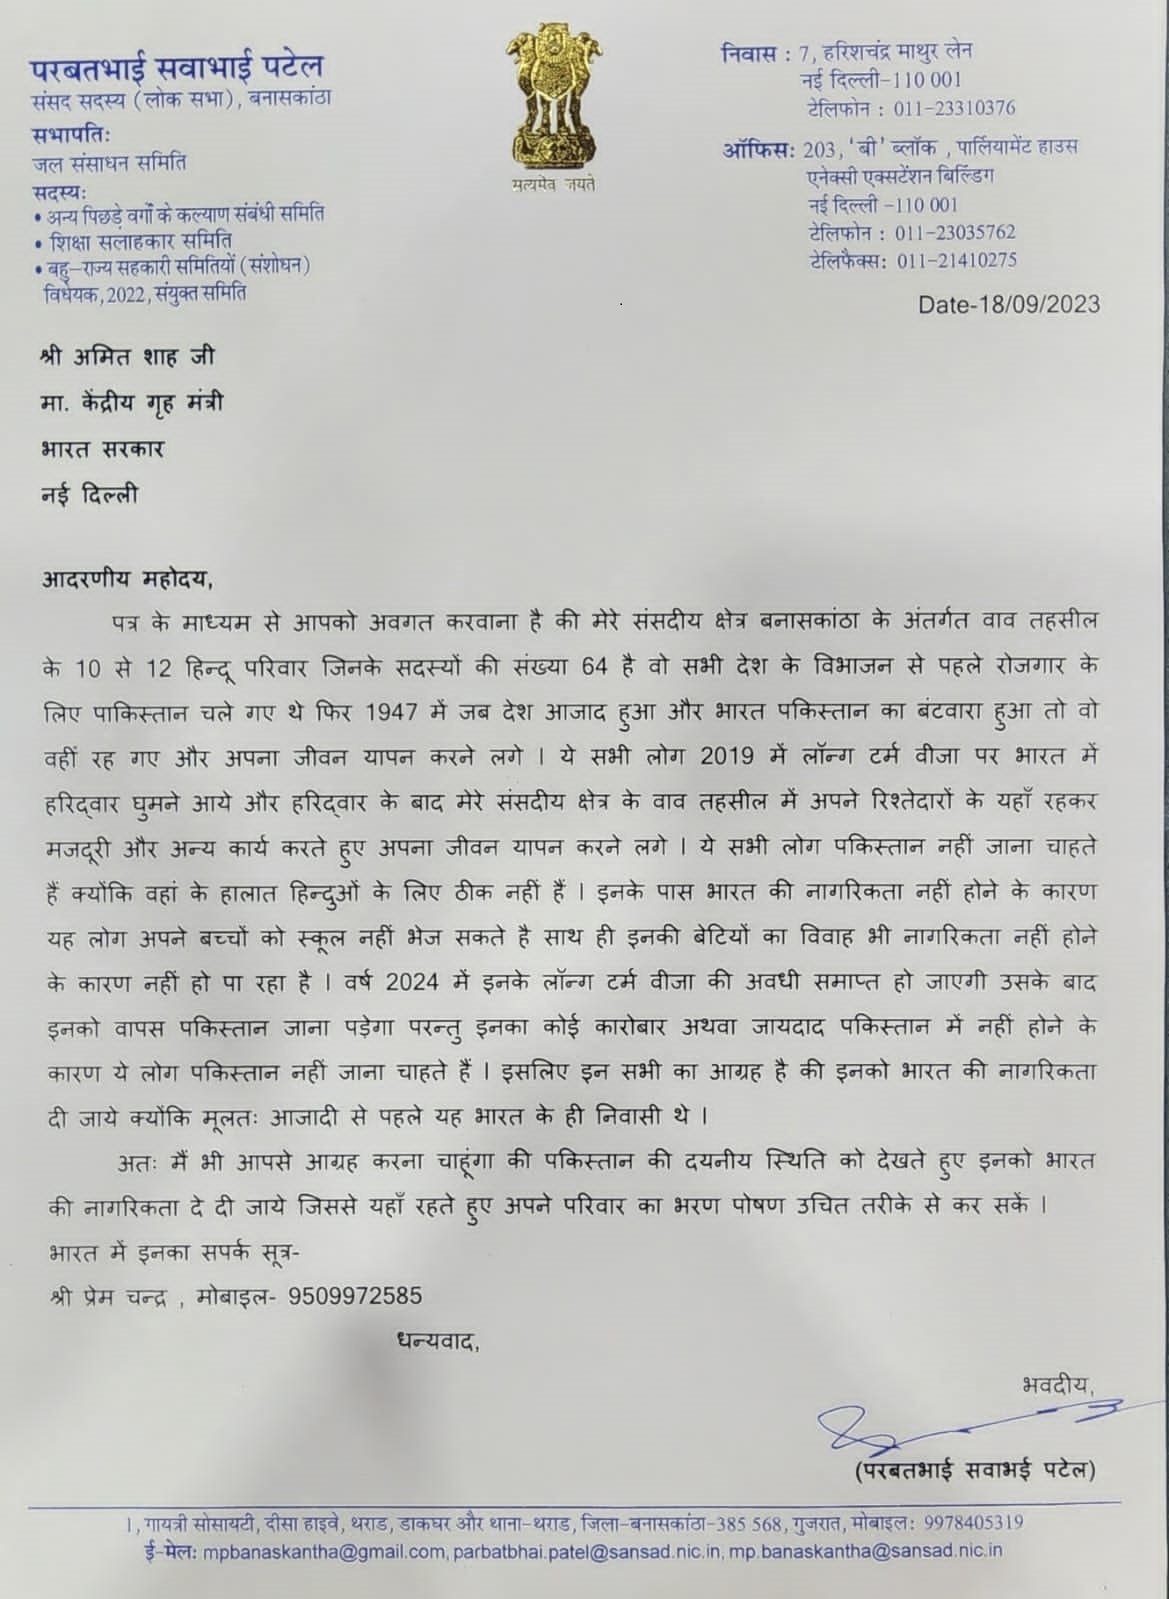 સાંસદ પરબત પટેલે ગૃહમંત્રી અમિત શાહને લખ્યો પત્ર, પાકિસ્તાનના હિંદુઓને ભારતની નાગરિકતા આપવાની કરી માંગ